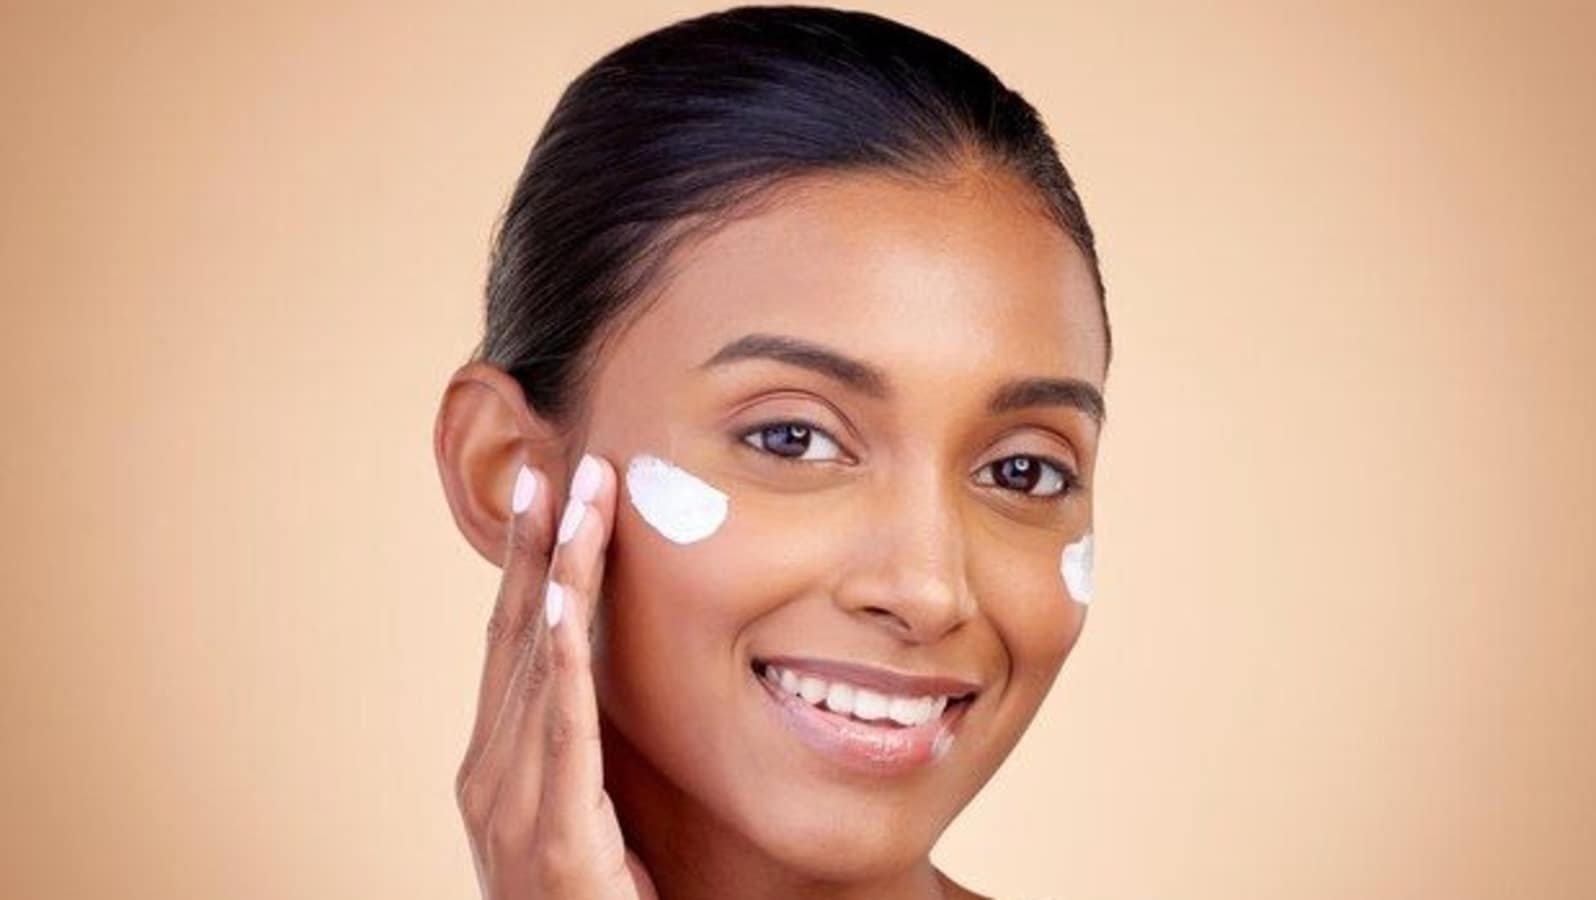 ज़रूरत है या नहीं: क्या भारतीय त्वचा के लिए सनस्क्रीन ज़रूरी है?